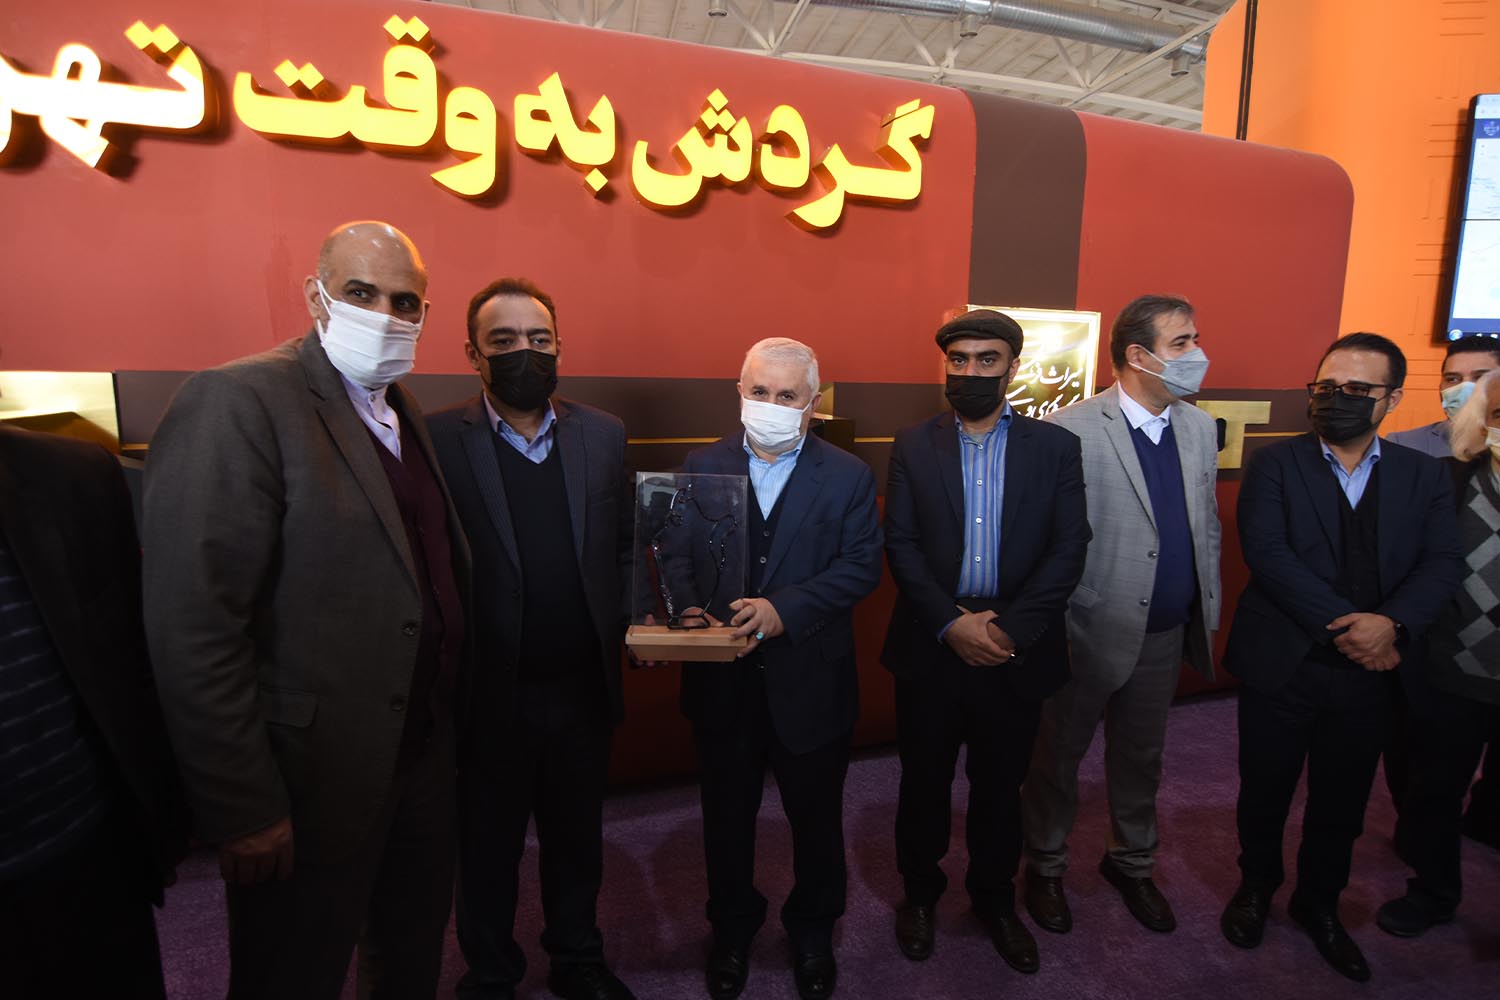 تندیس رویداد ملی طراحی آبگینه 1400 در غرفه استان تهران رونمایی شد